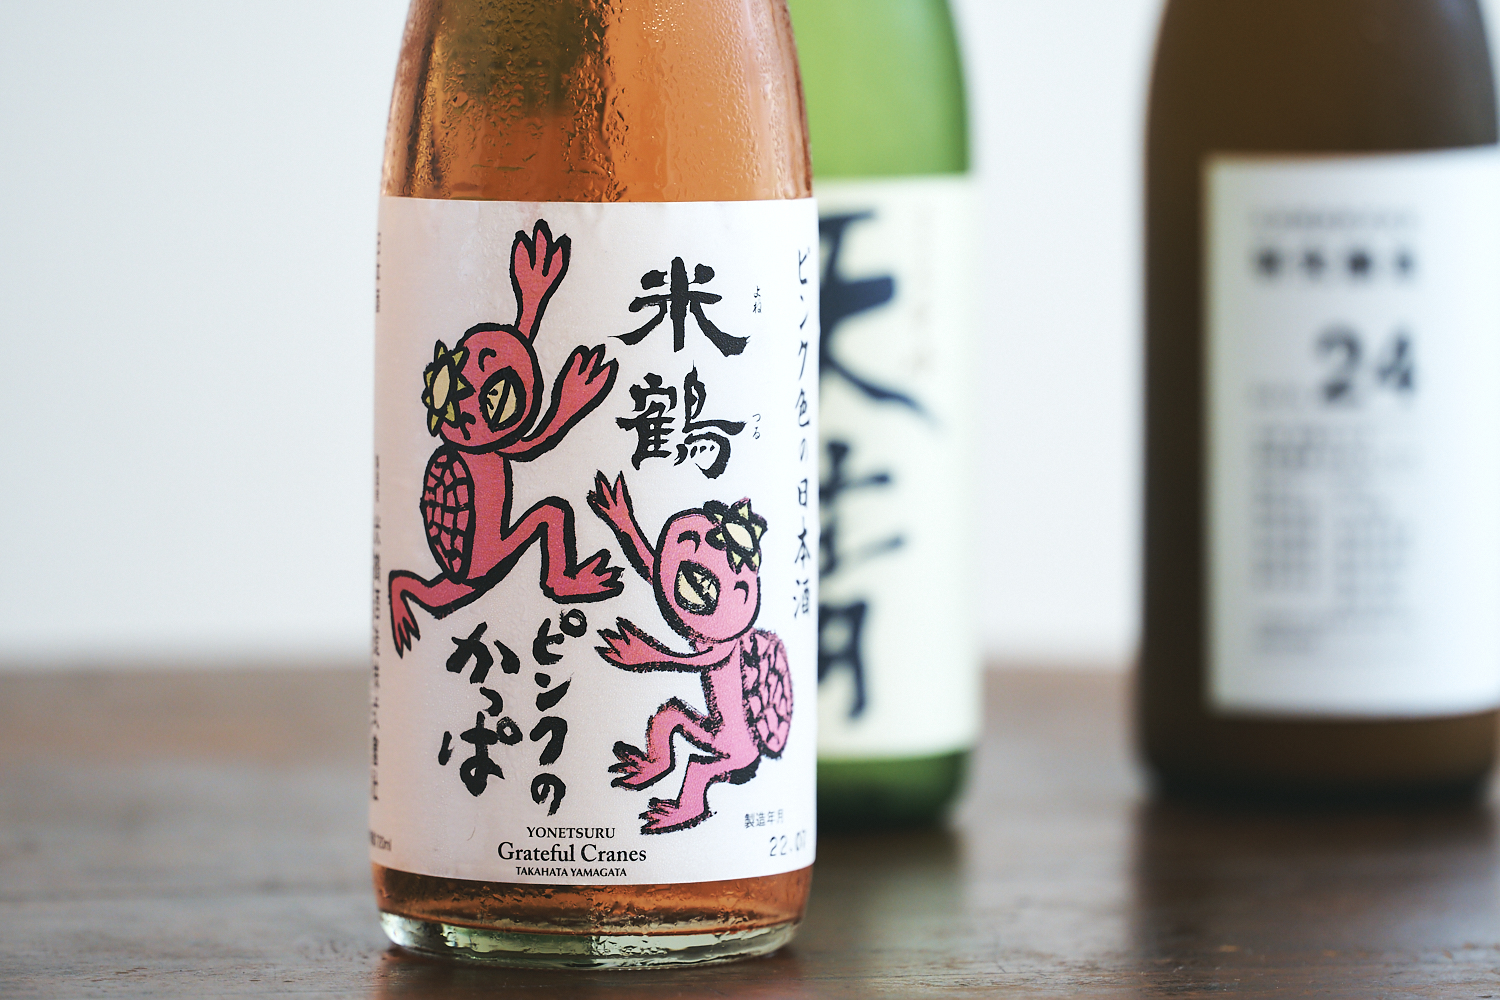 山形県高畠町にある「米鶴酒造」から、赤色酵母を使ったピンク色のお酒。きれいなロゼカラーで甘酸っぱい味わい。アルコール度数も10％と低アルで飲みやすいので日本酒初心者にも◎。「米鶴 ピンクのかっぱ純米酒」720ml 1,360円（税別・ひいな購入時価格）／米鶴酒造株式会社